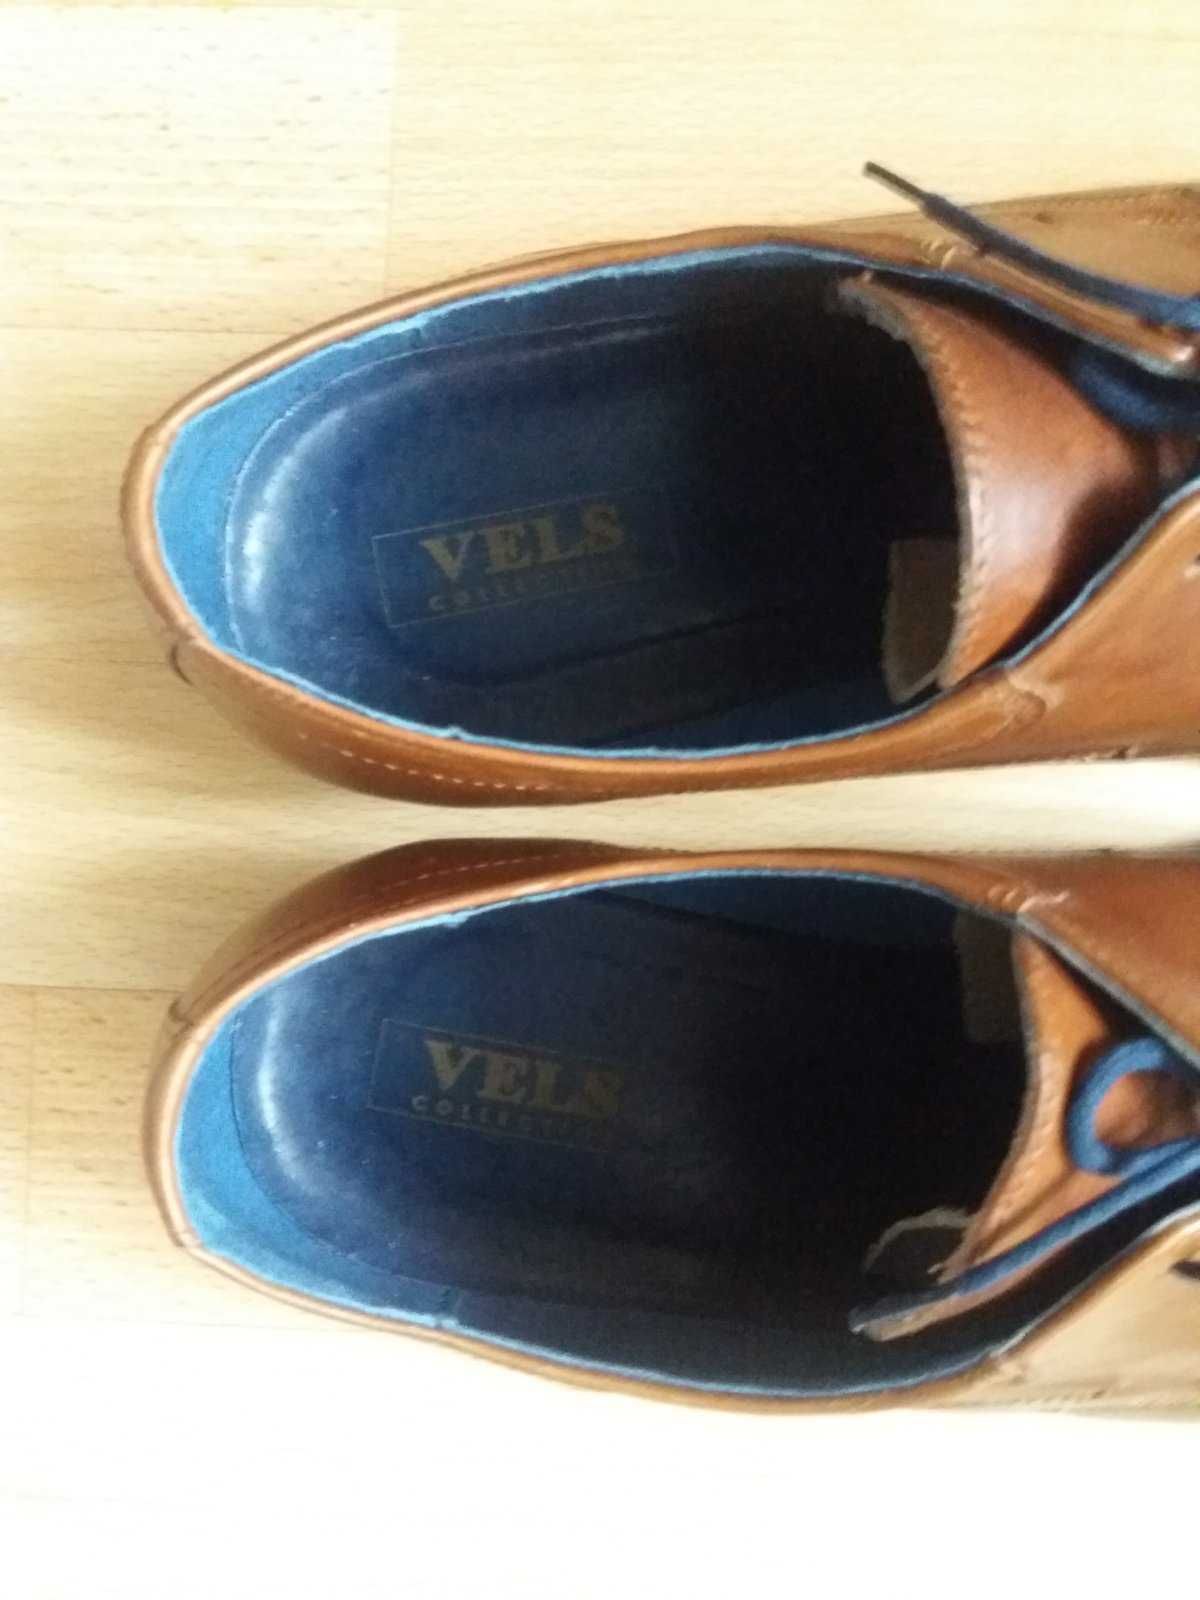 Туфлі (туфли) Vels, коричневого кольору, 42 (42,5-43) розмір.